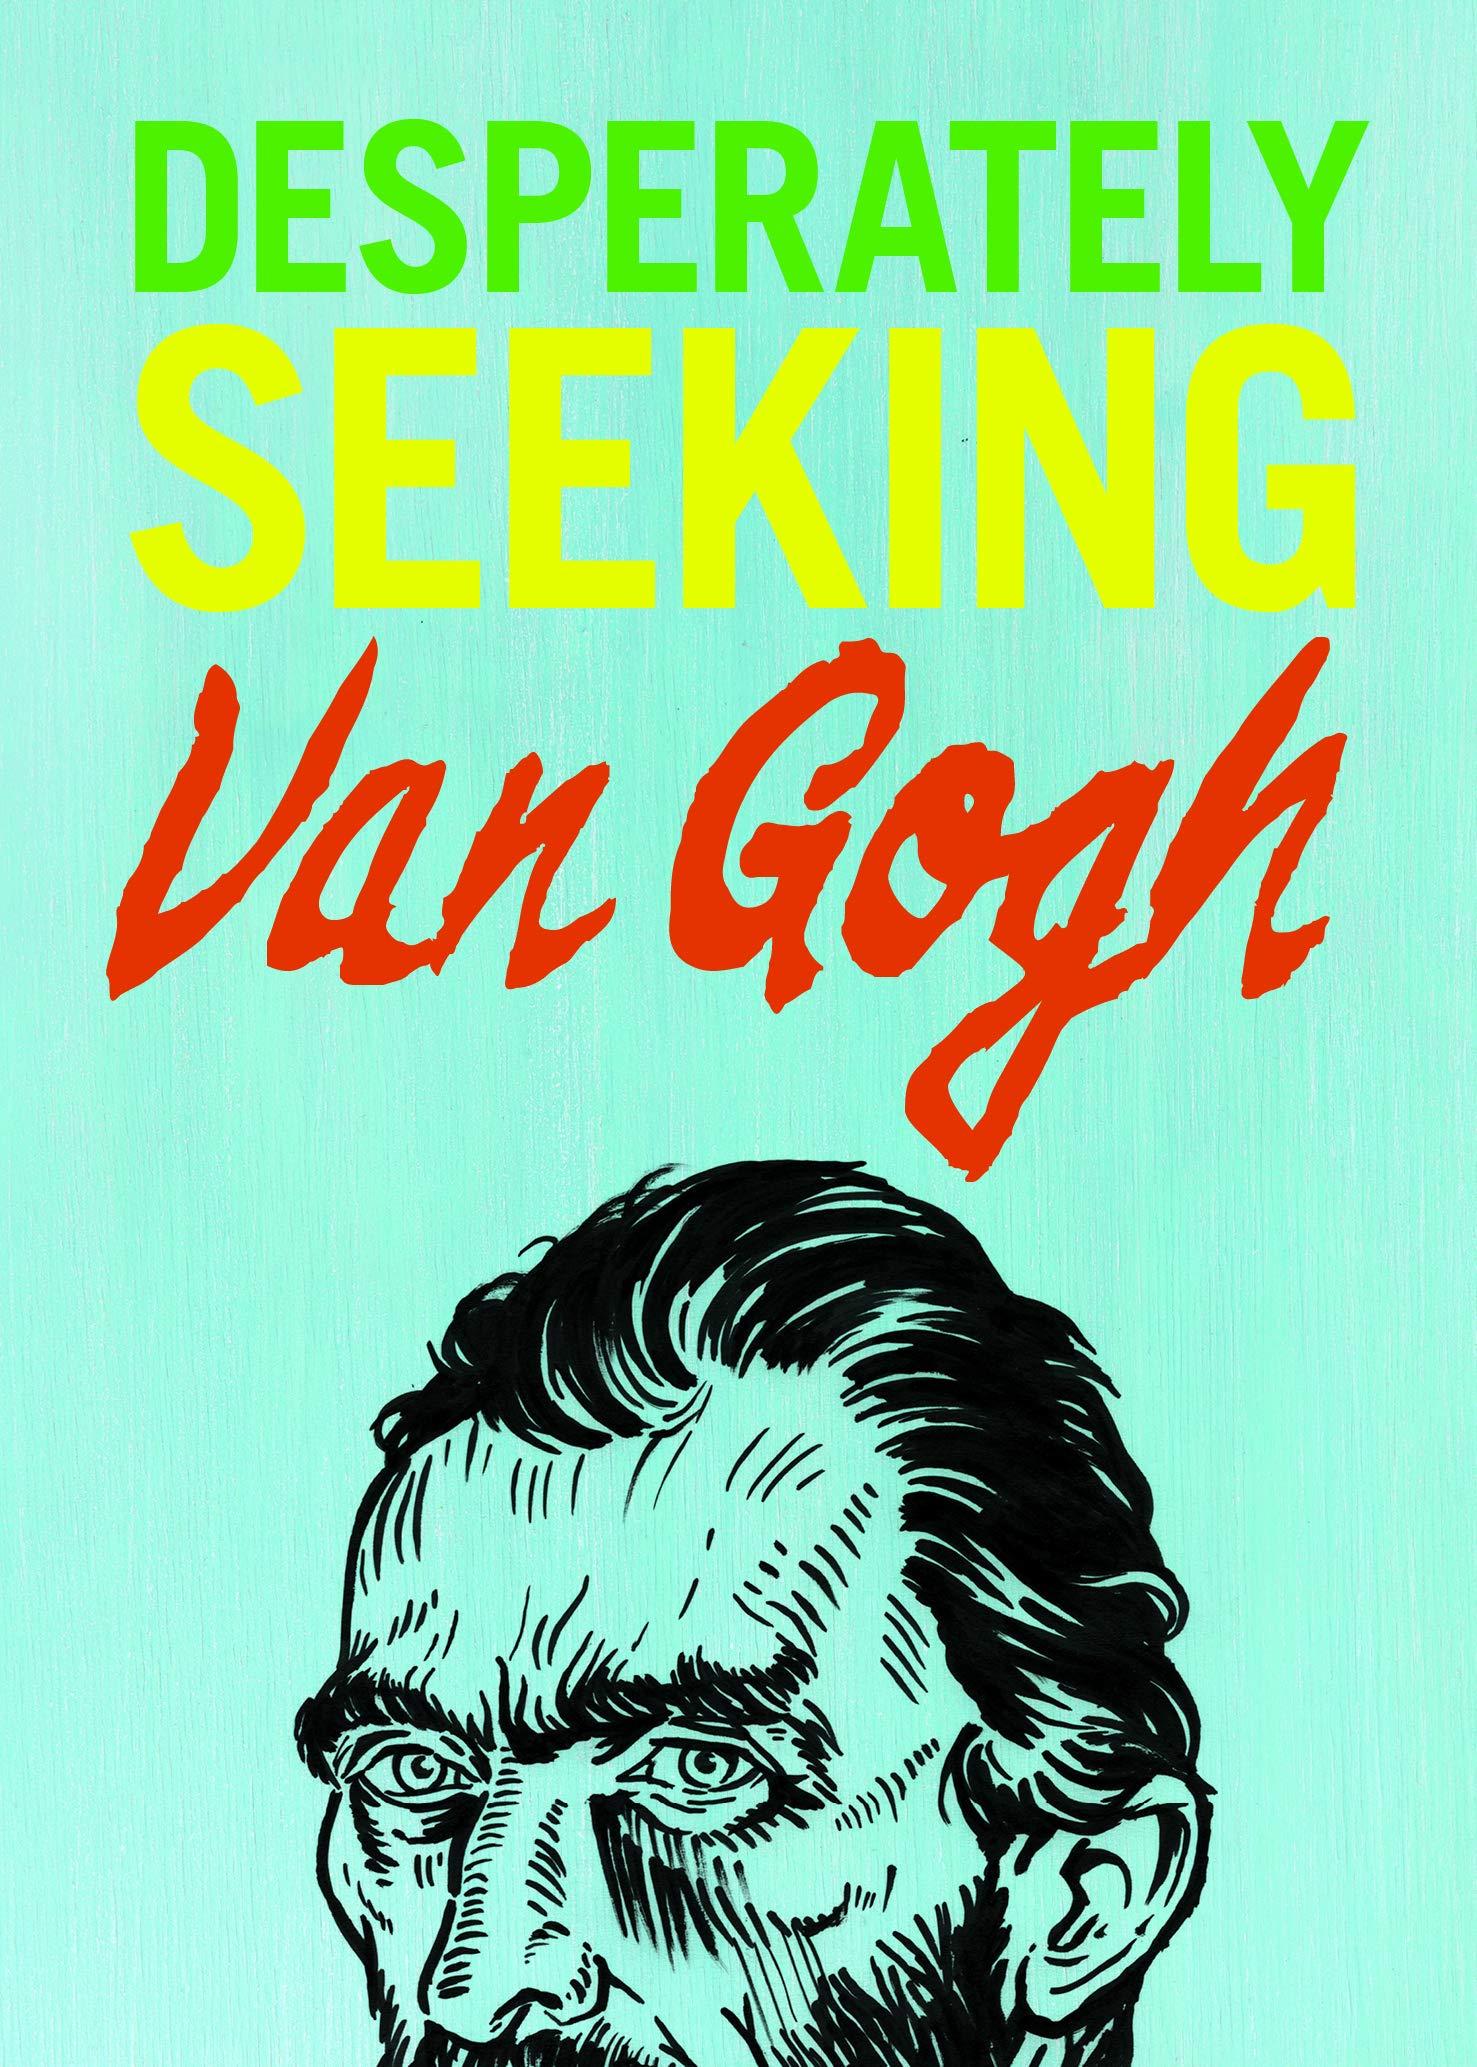 Destperately Seeking Van Gogh